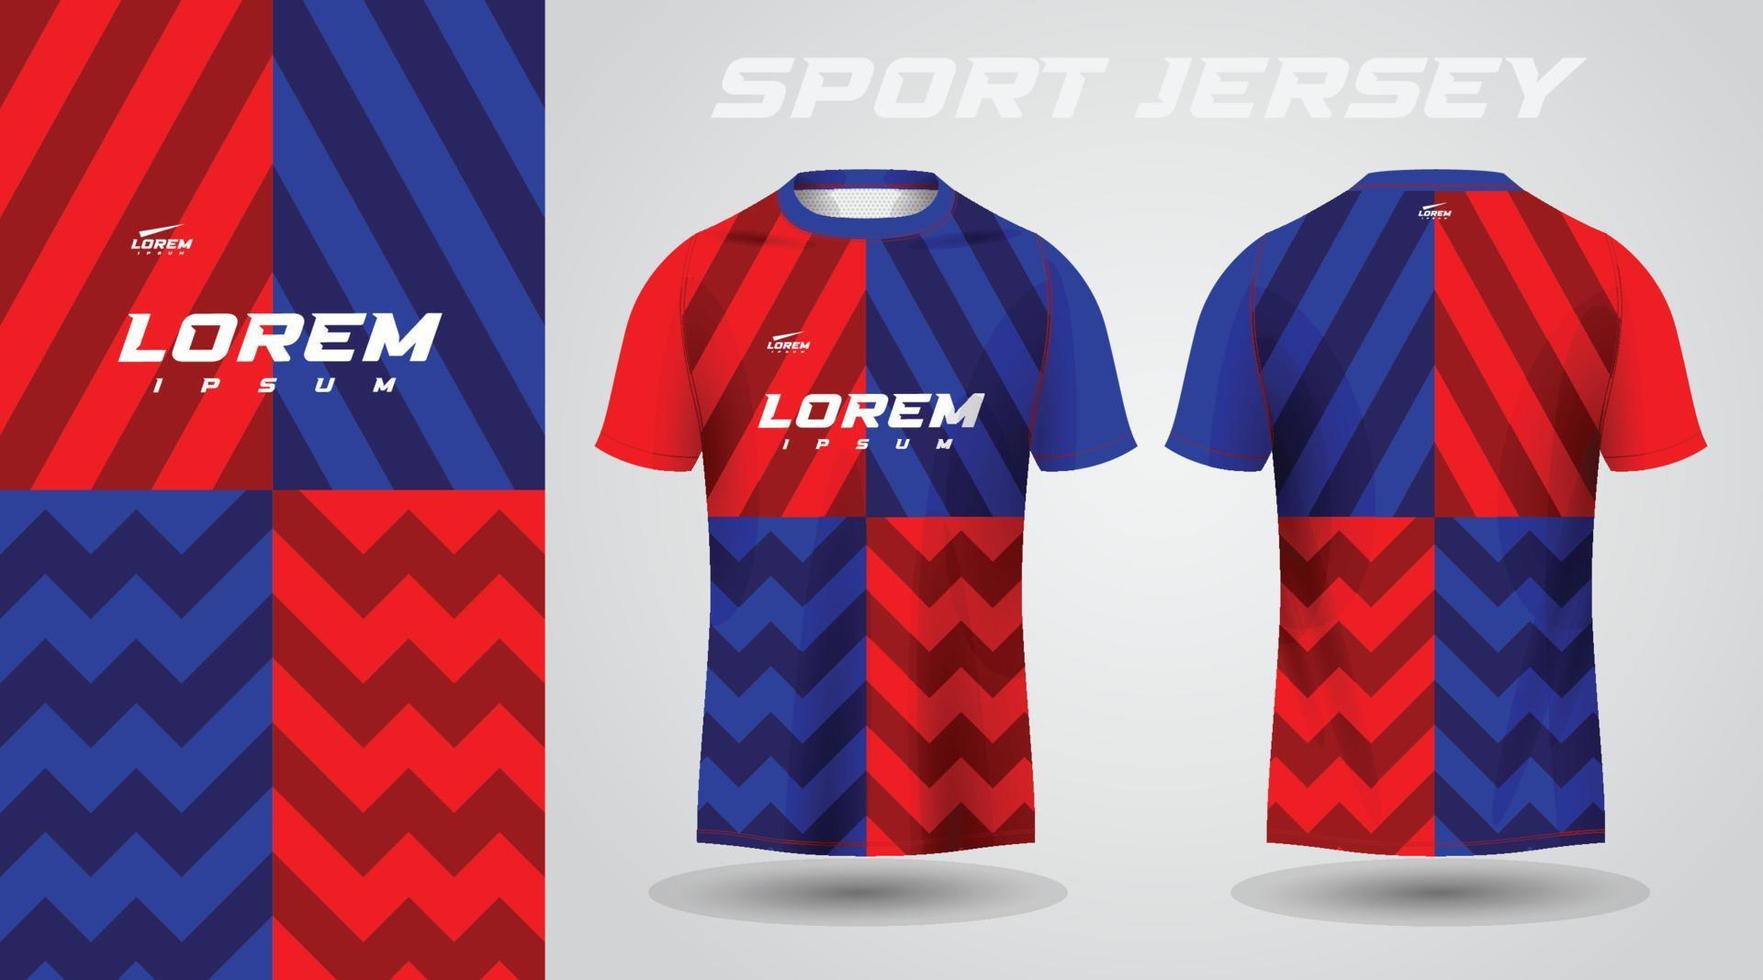 red blue shirt sport jersey design vector